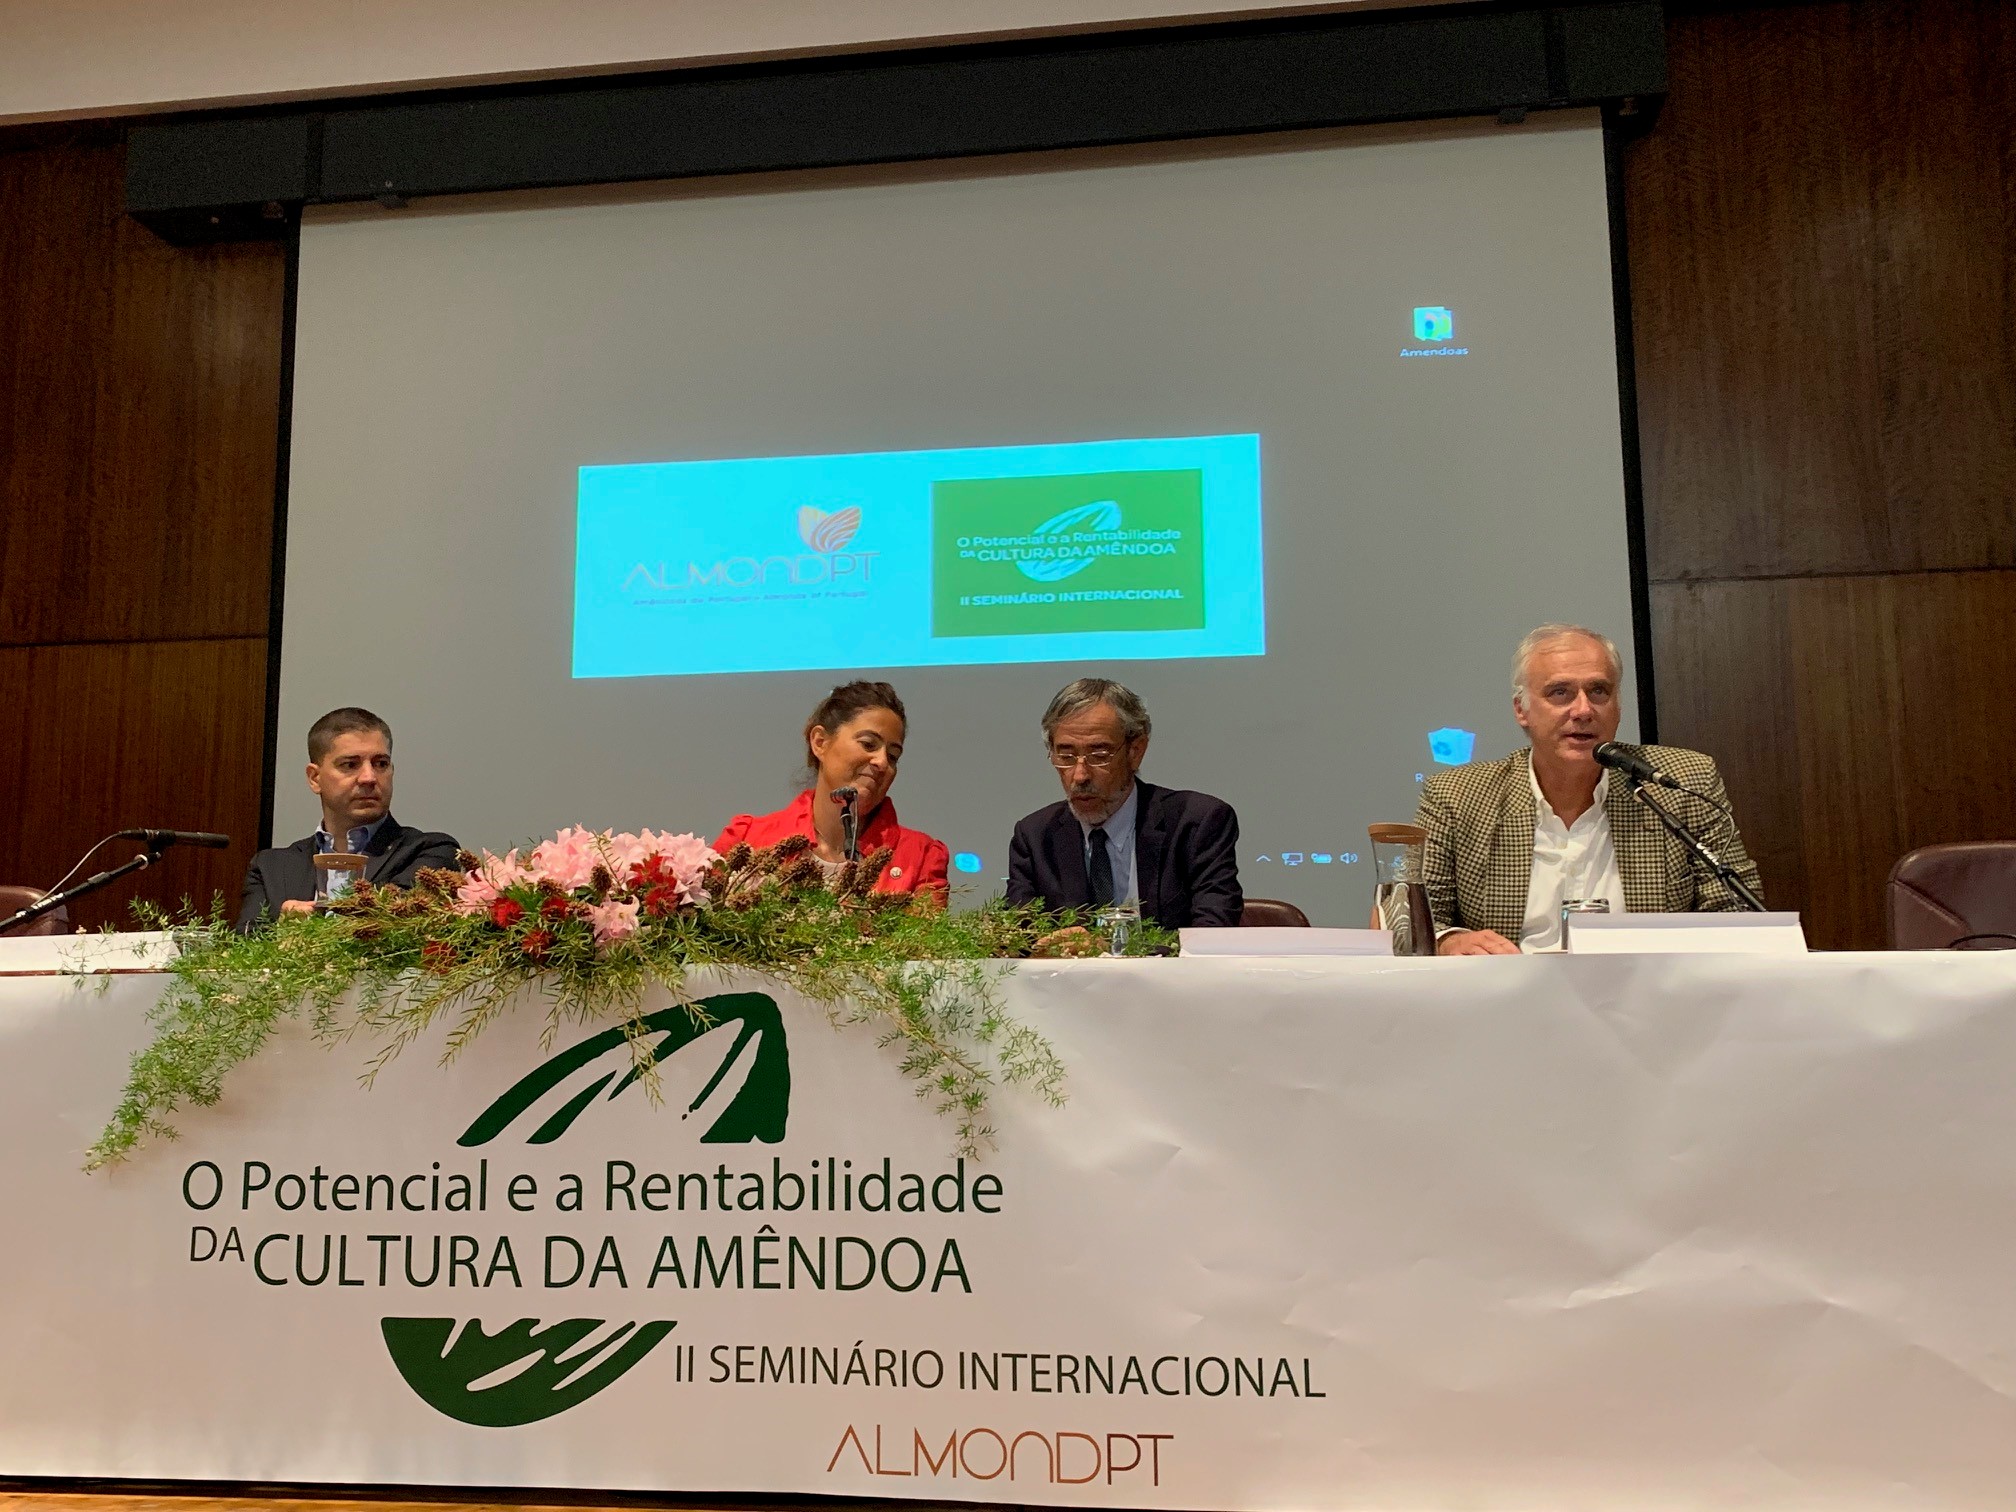 II Seminário Internacional “O Potencial e a Rentabilidade da Cultura da Amêndoa”